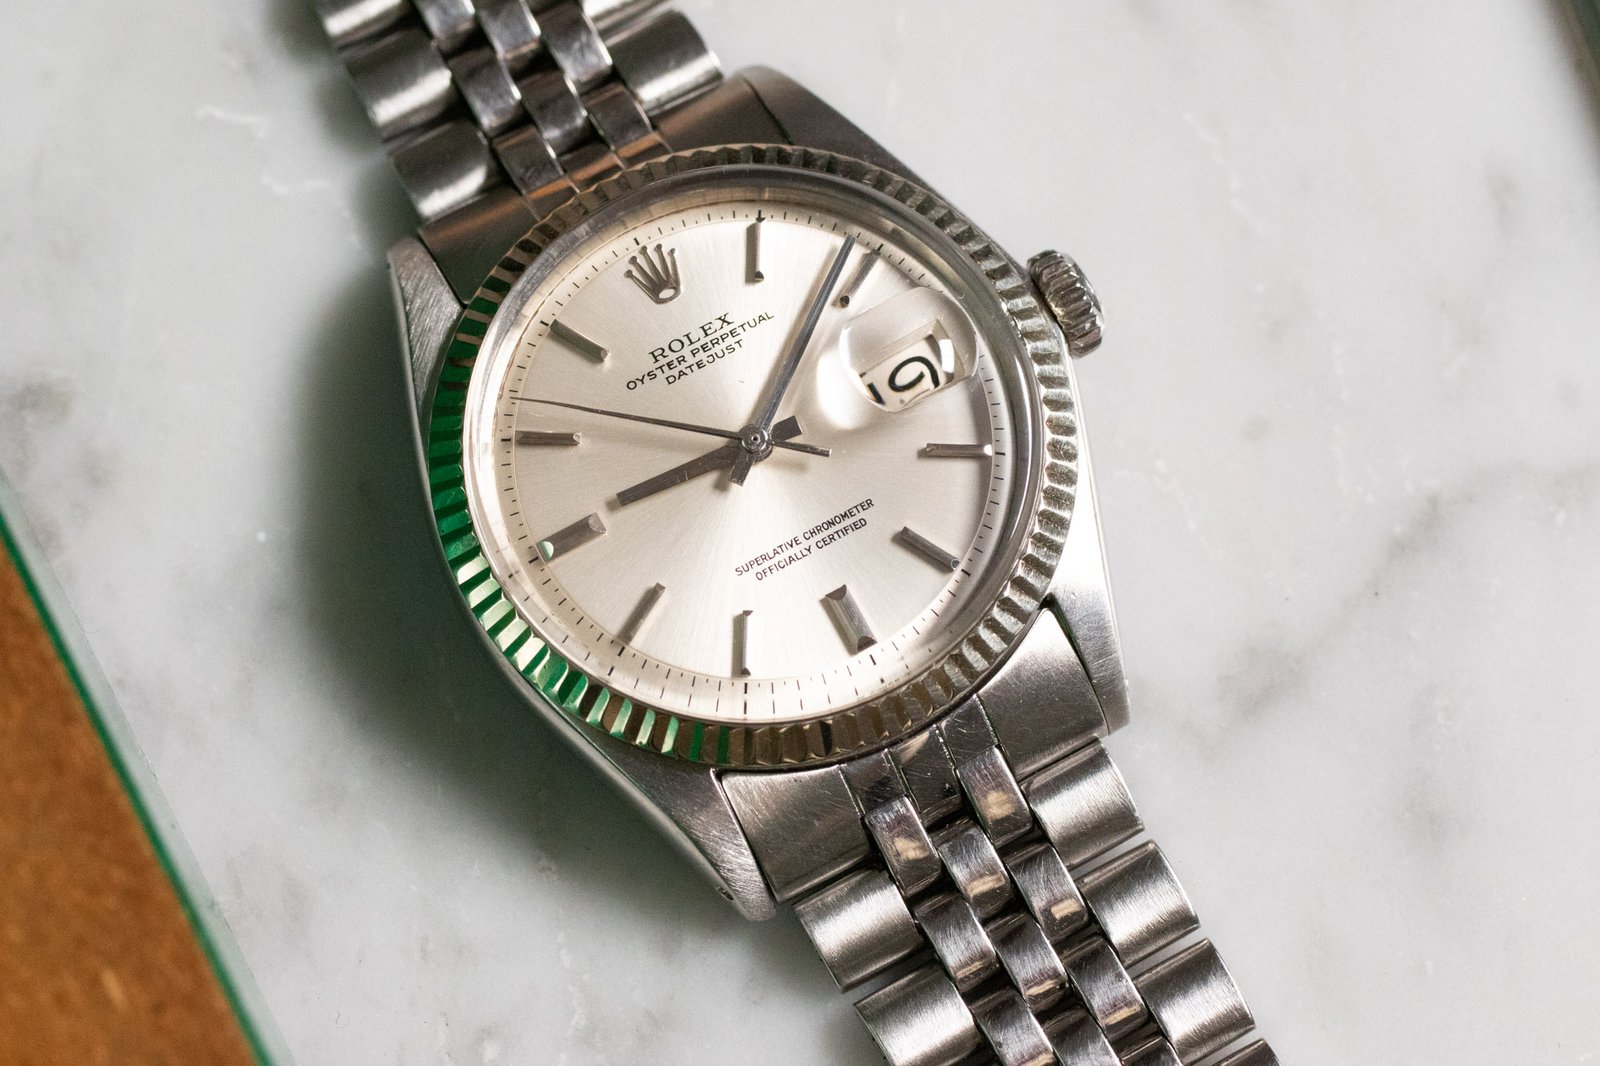 Rolex Datejust 1601 - Selection of vintage watches Joseph Bonnie